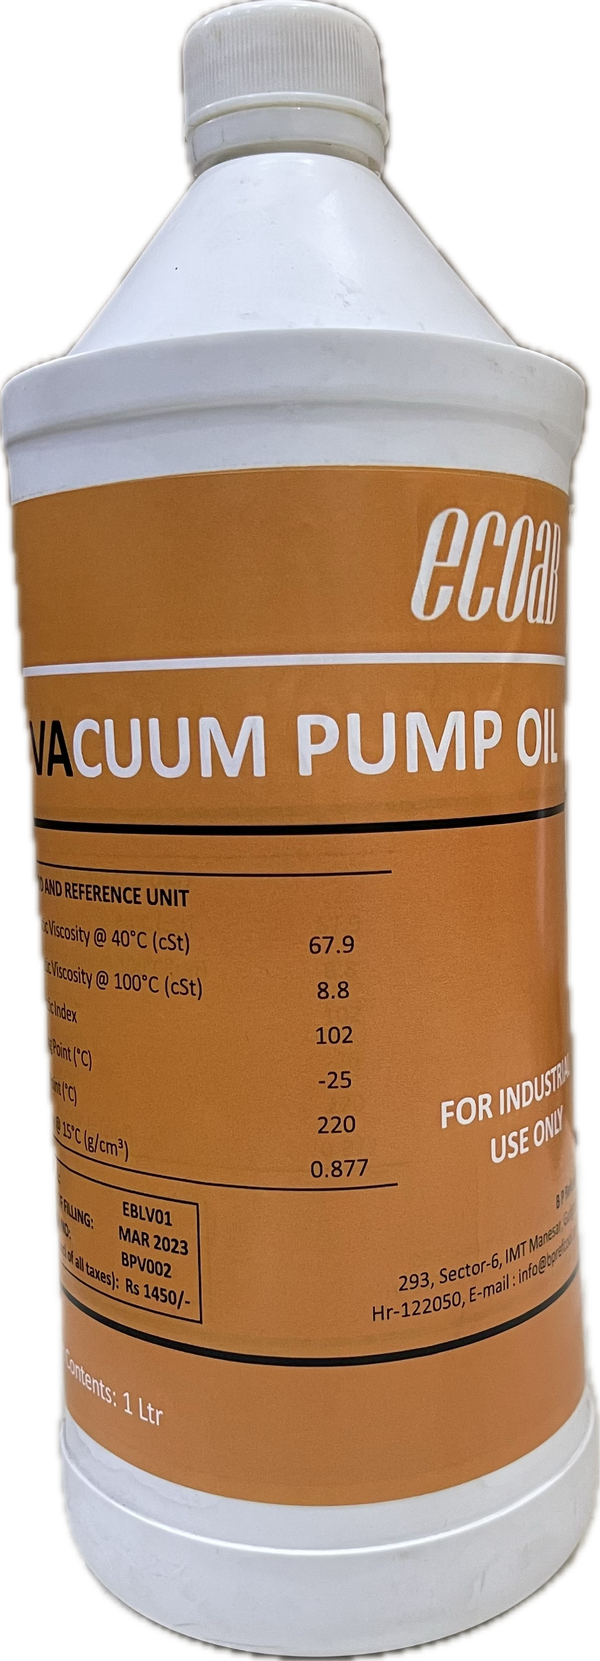 Vacuum Pump Oil- ECOAB (1 ltr)